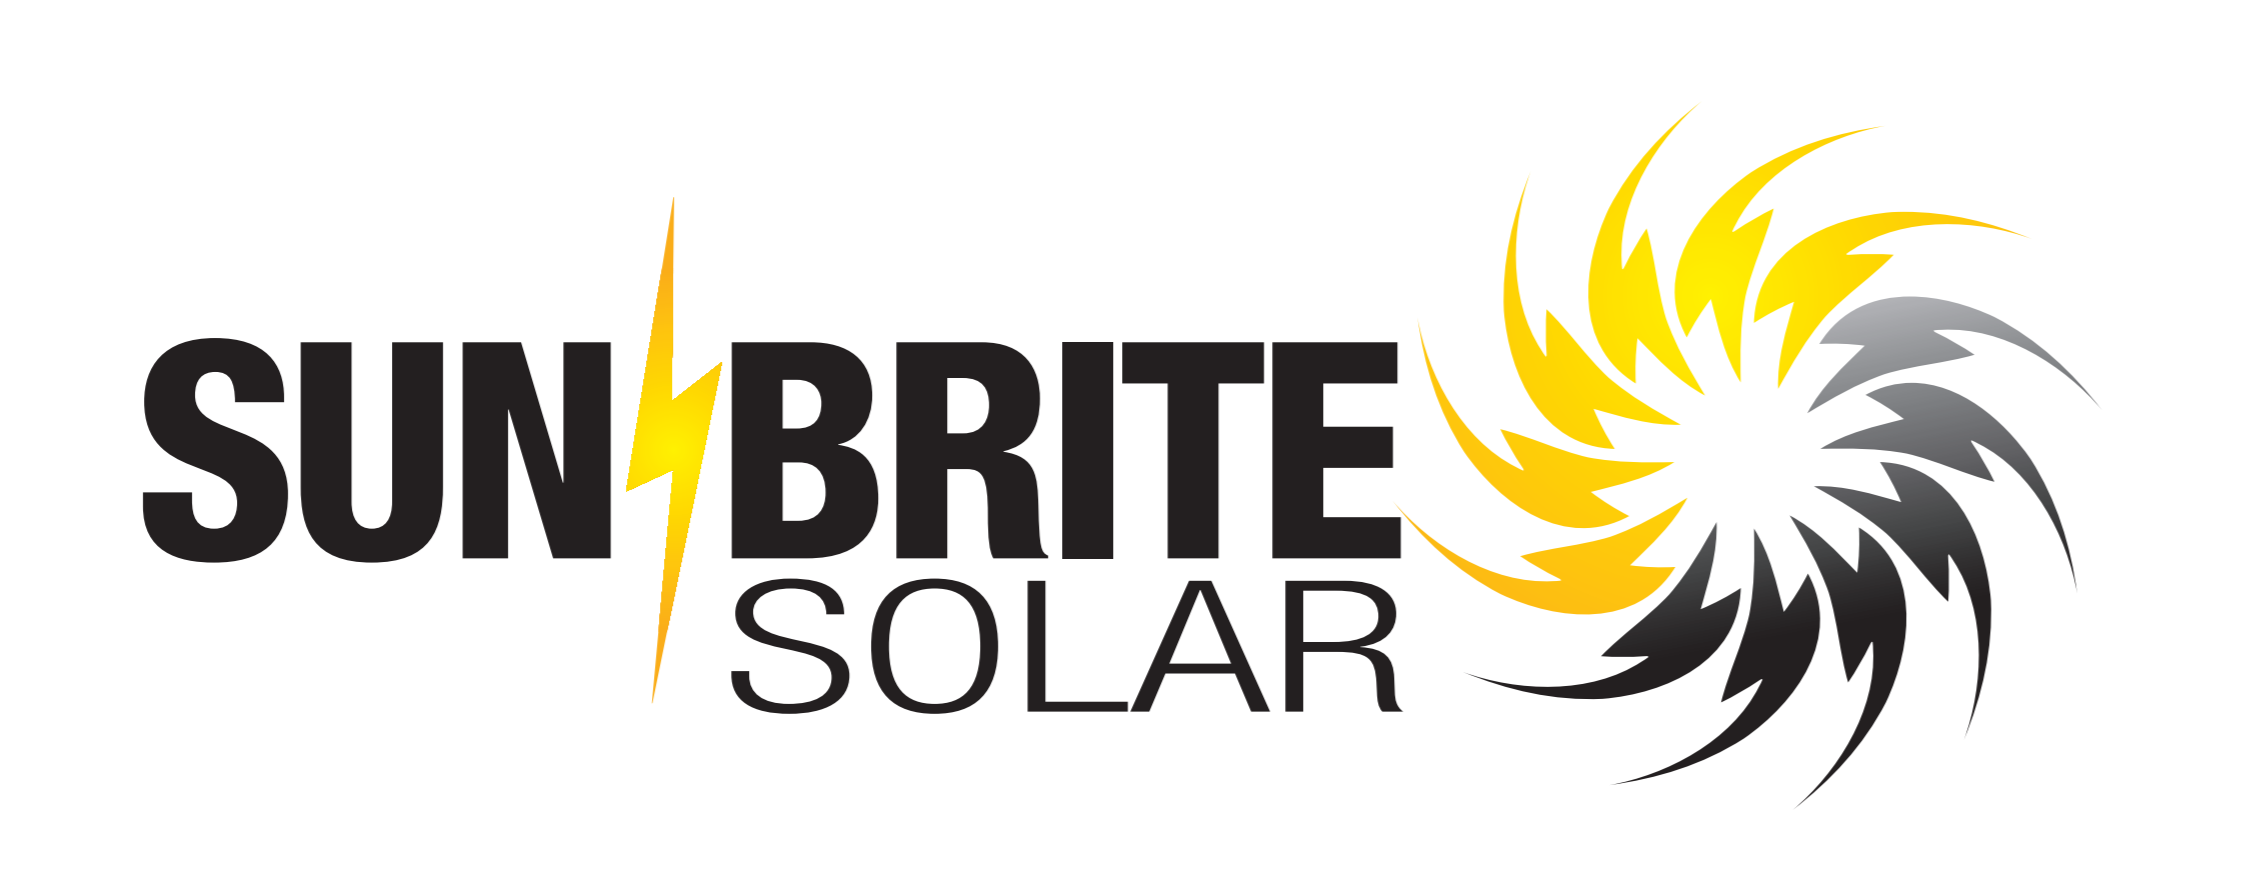 sun-brite-solar-solar-reviews-complaints-address-solar-panels-cost